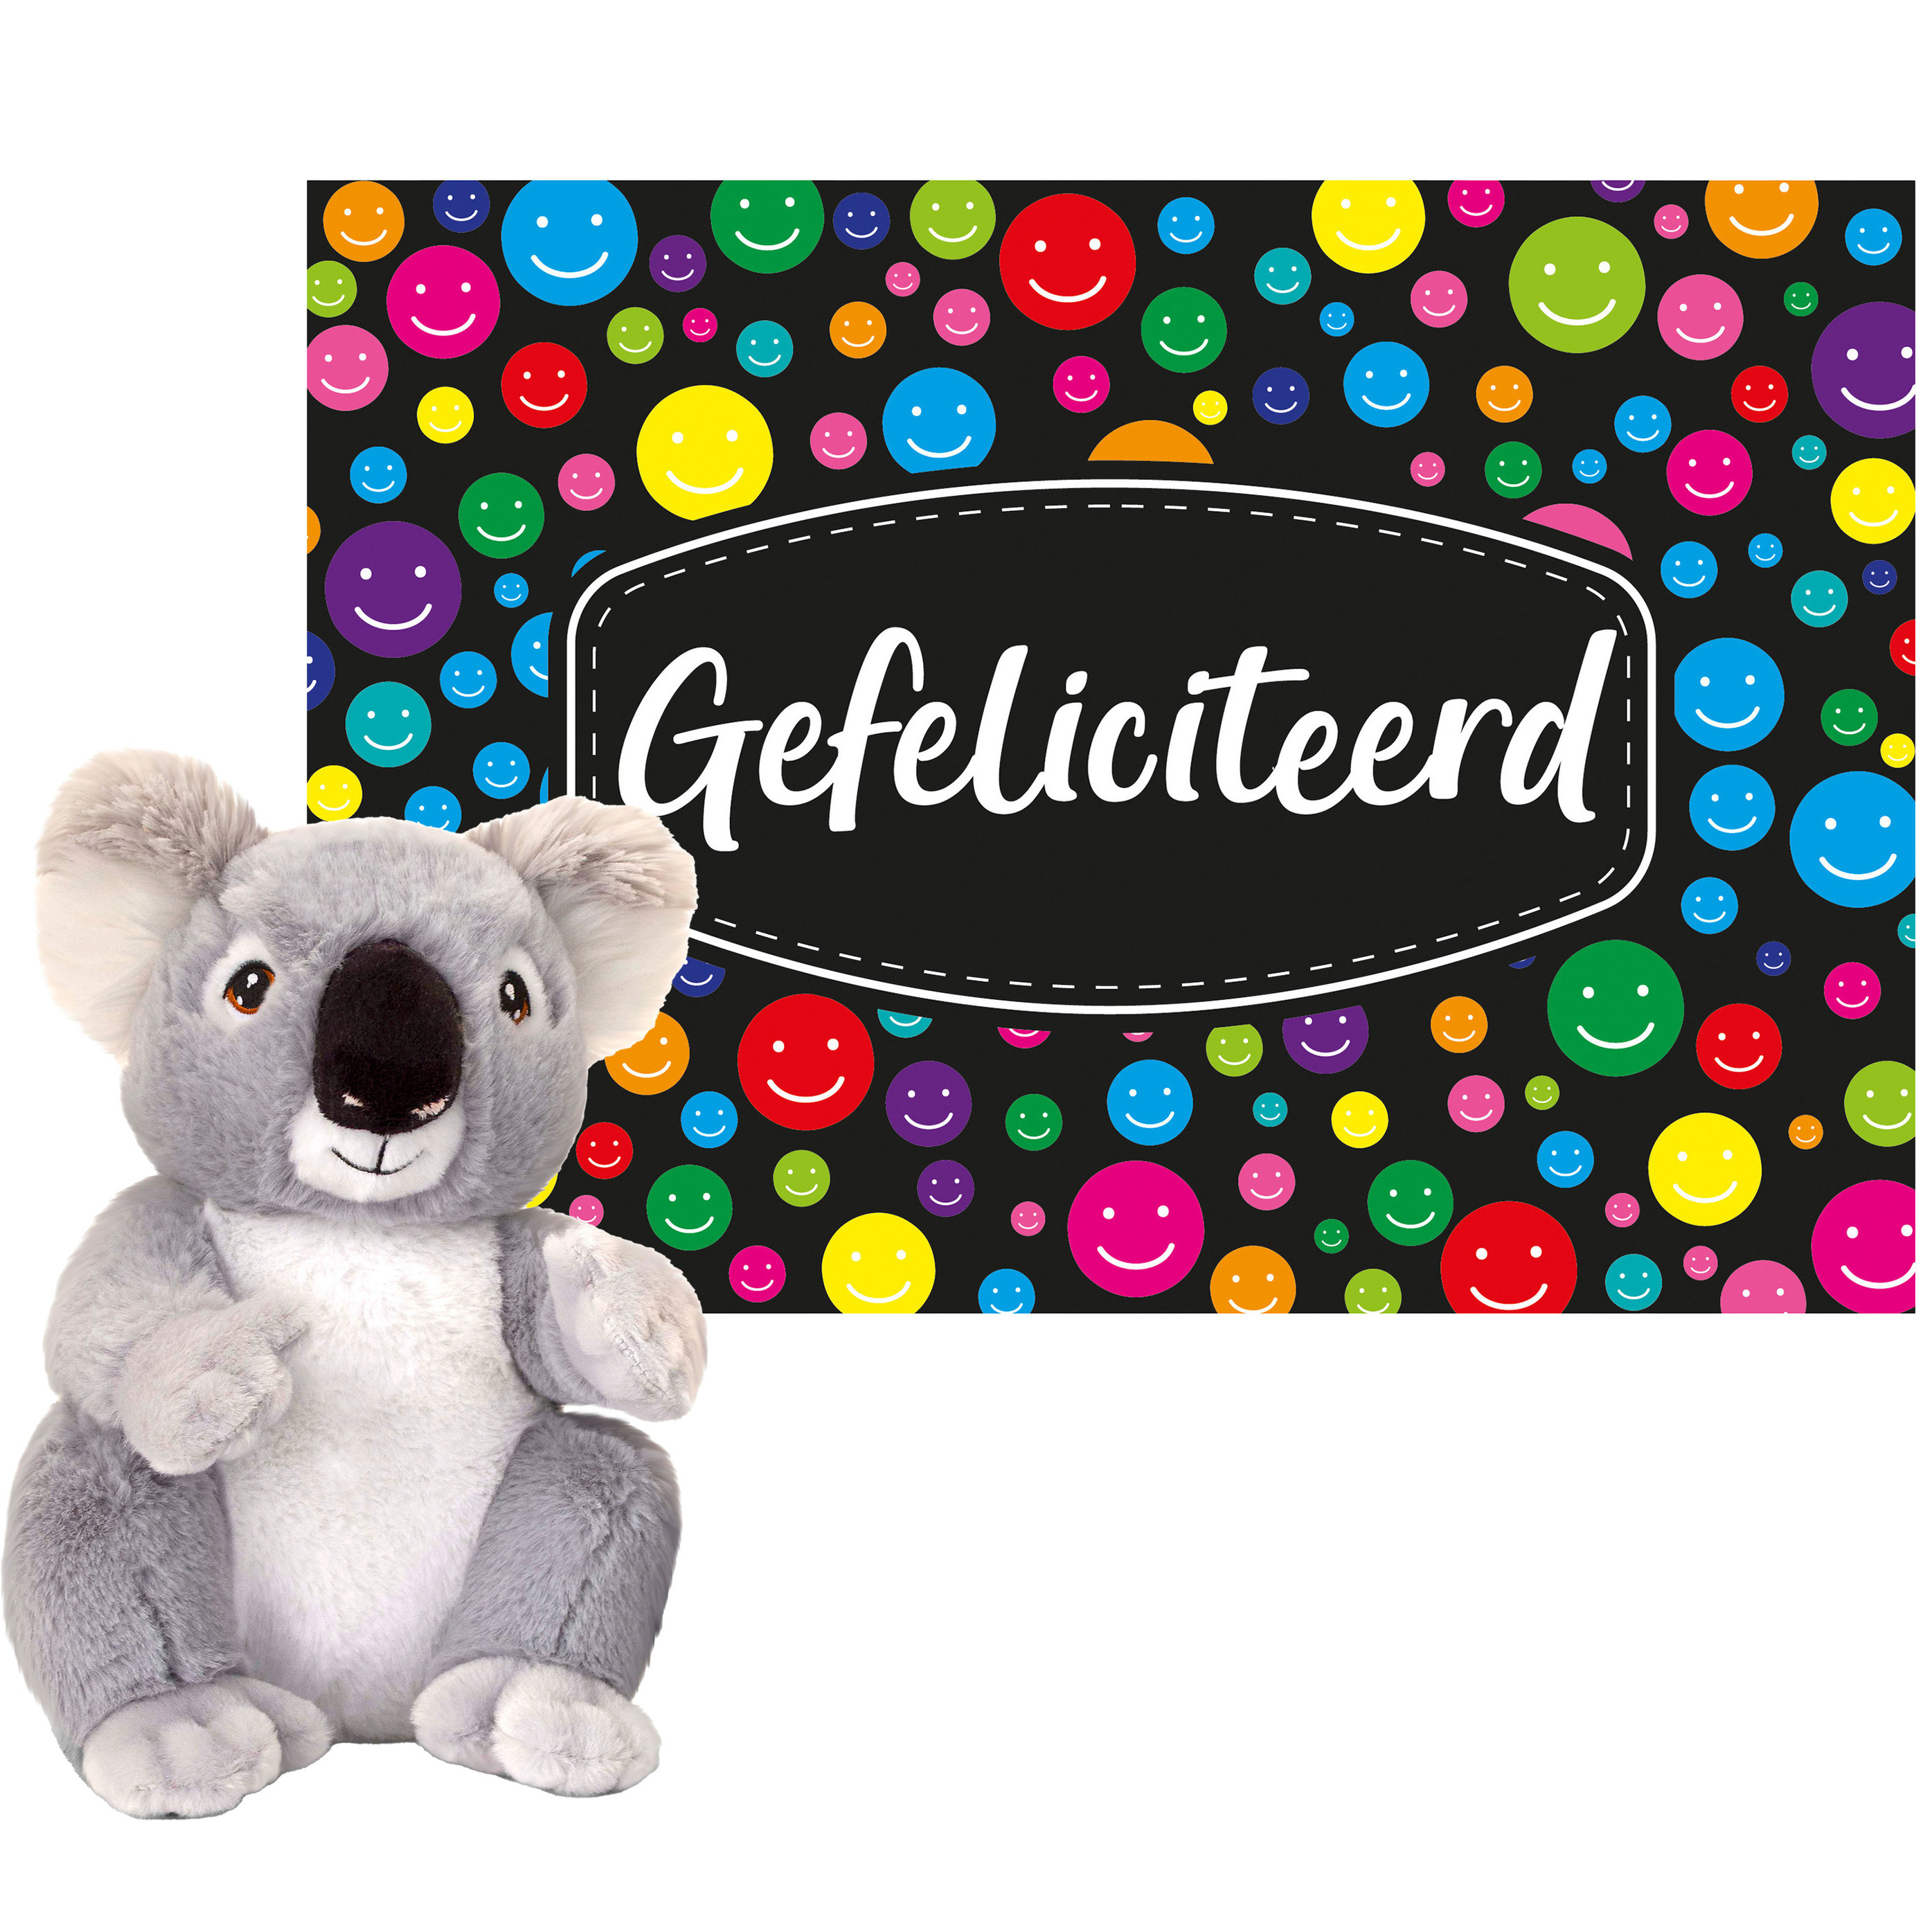 Keel toys Cadeaukaart Gefeliciteerd met knuffeldier koala 26 cm